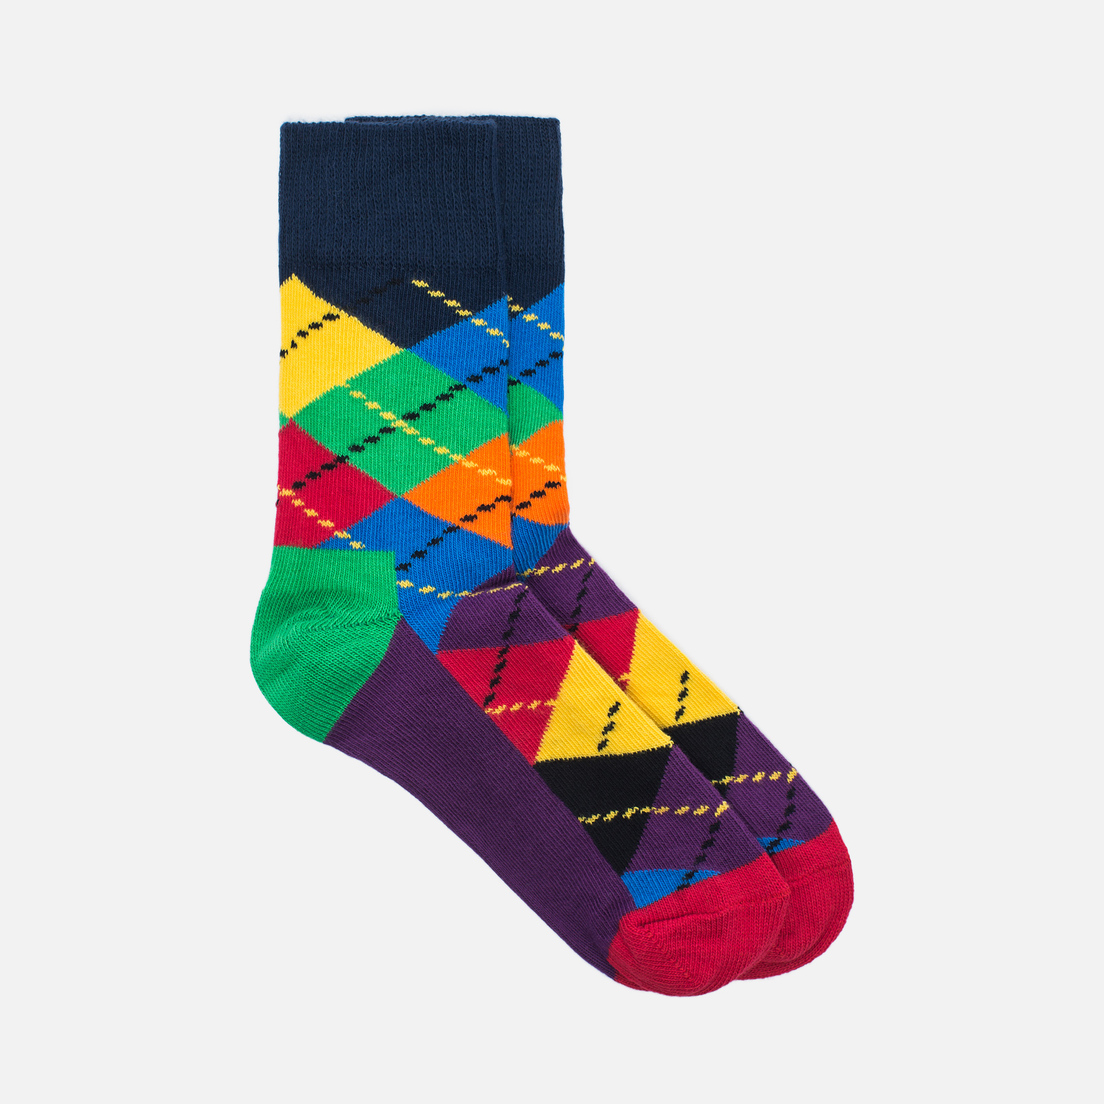 Happy Socks Комплект детских носков Argyle 2 Pack